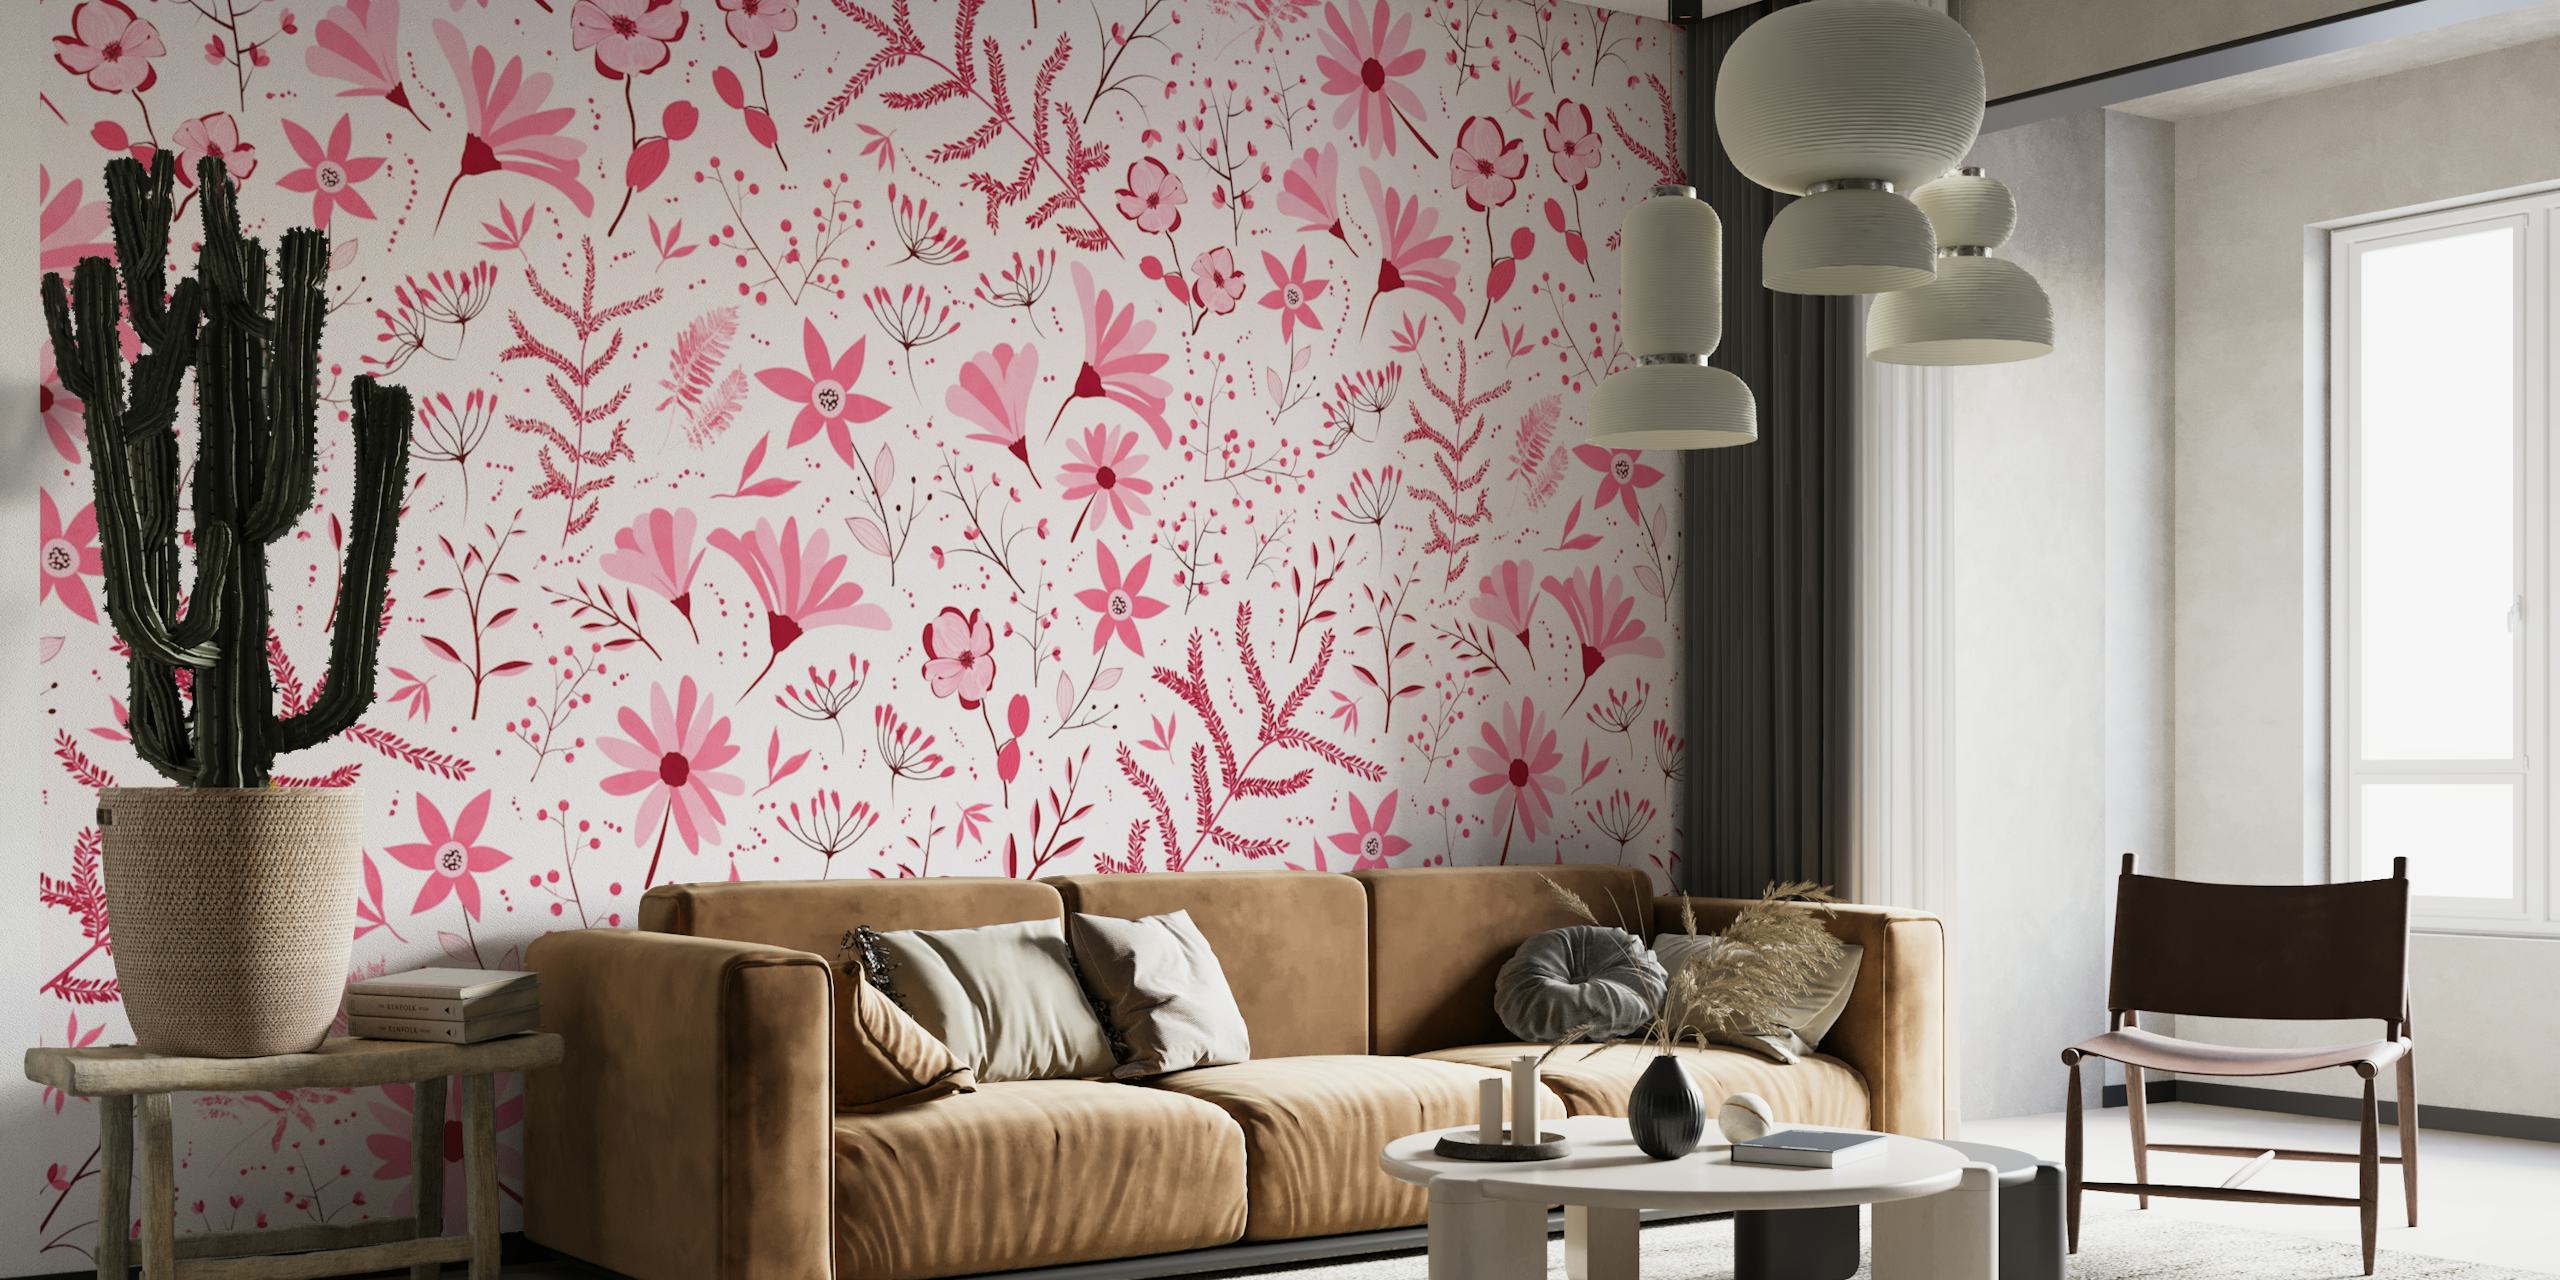 Dizajn zidnih murala magenta poljskog cvijeća i biljaka